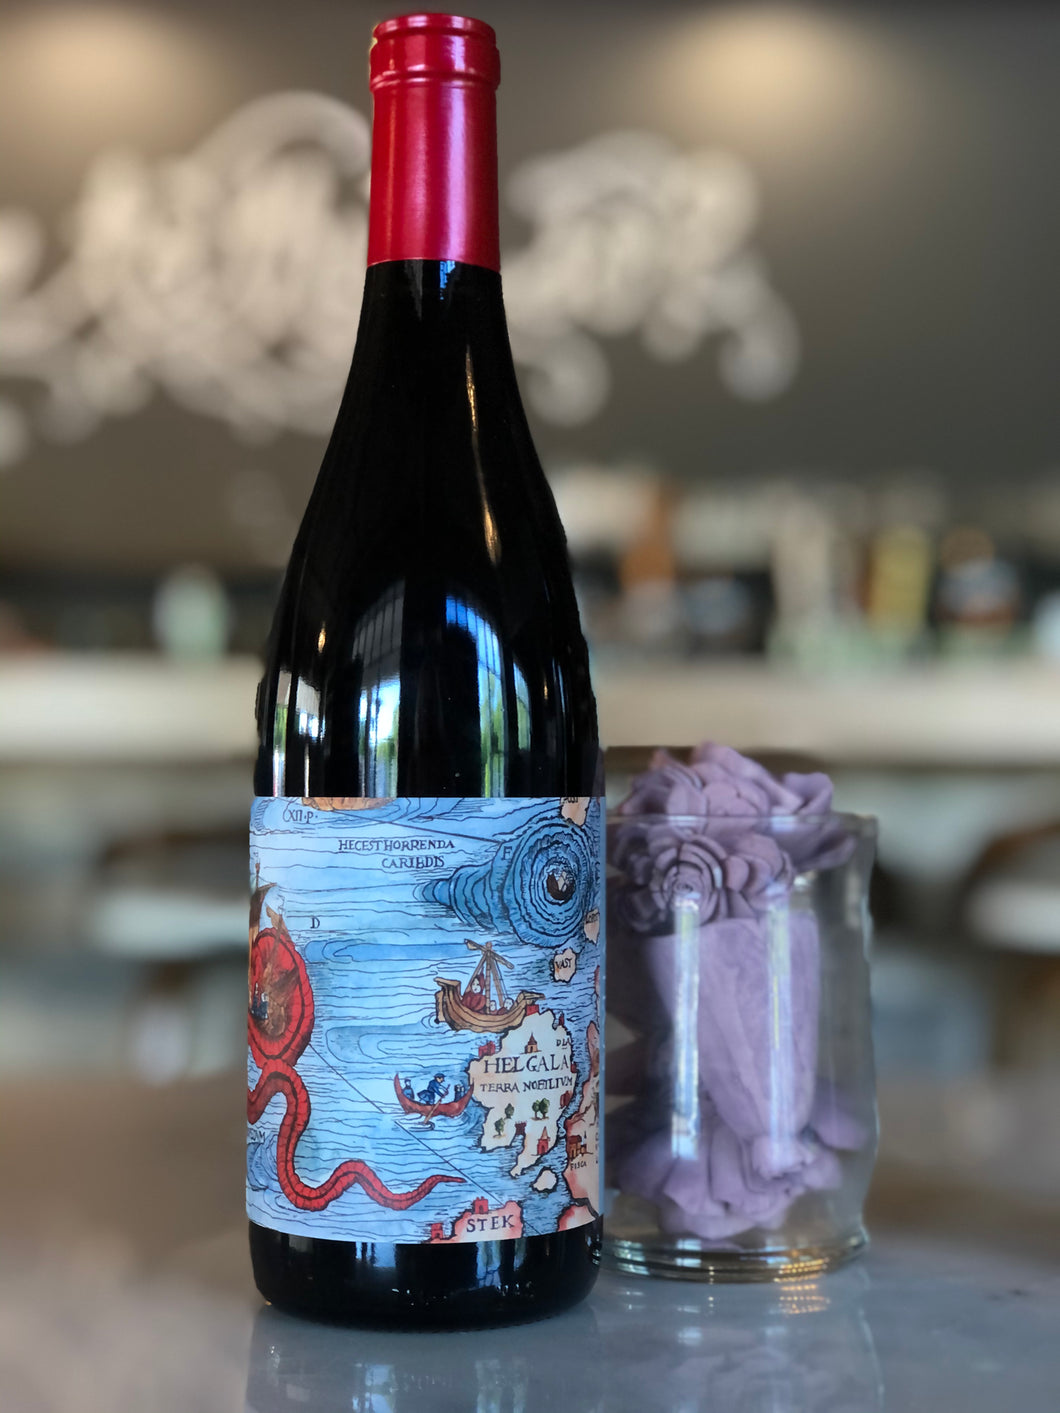 Scylla California Red Wine, 2018